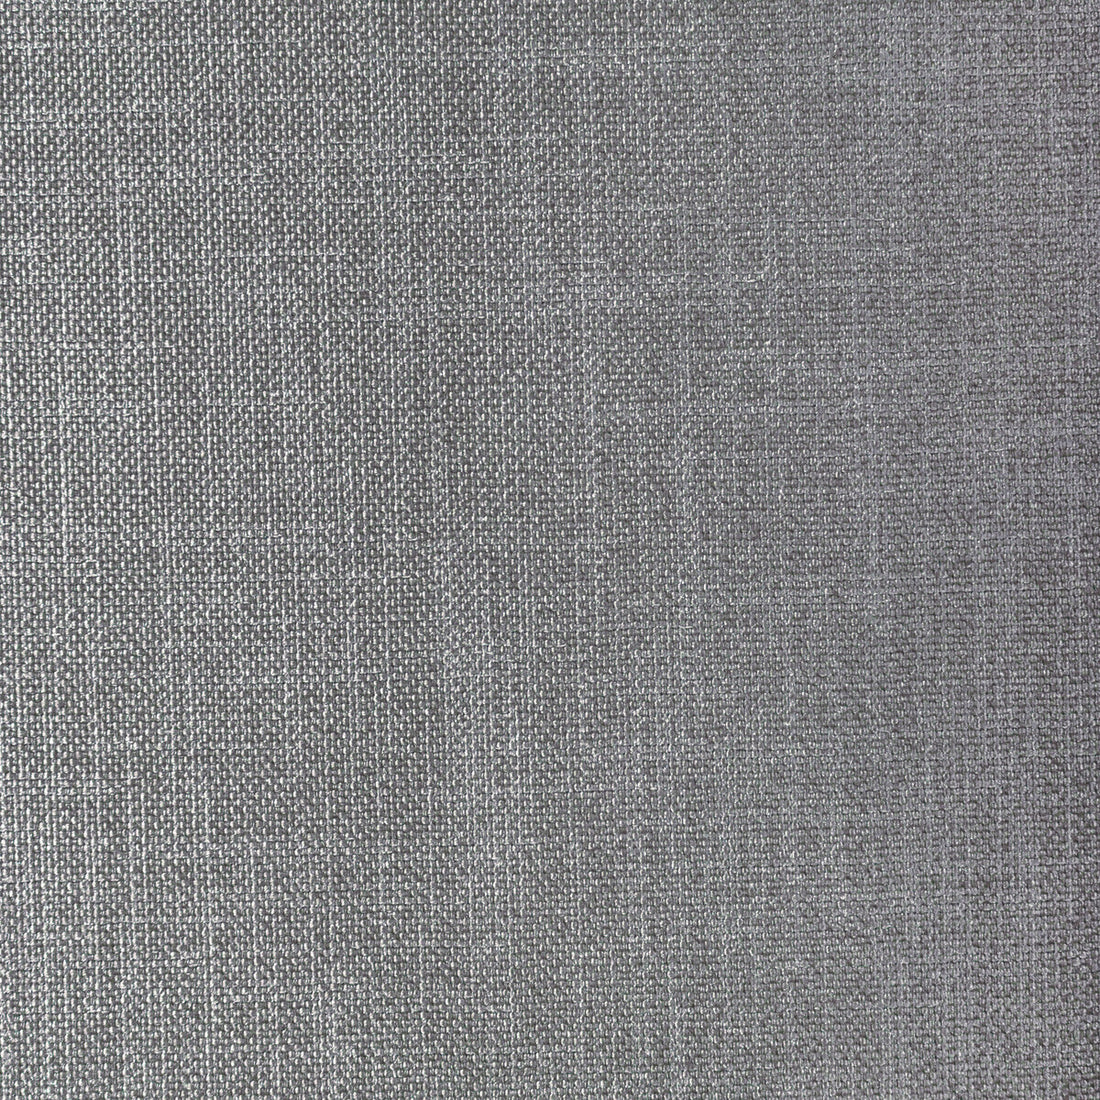 Kravet Basics fabric in 33120-21 color - pattern 33120.21.0 - by Kravet Basics